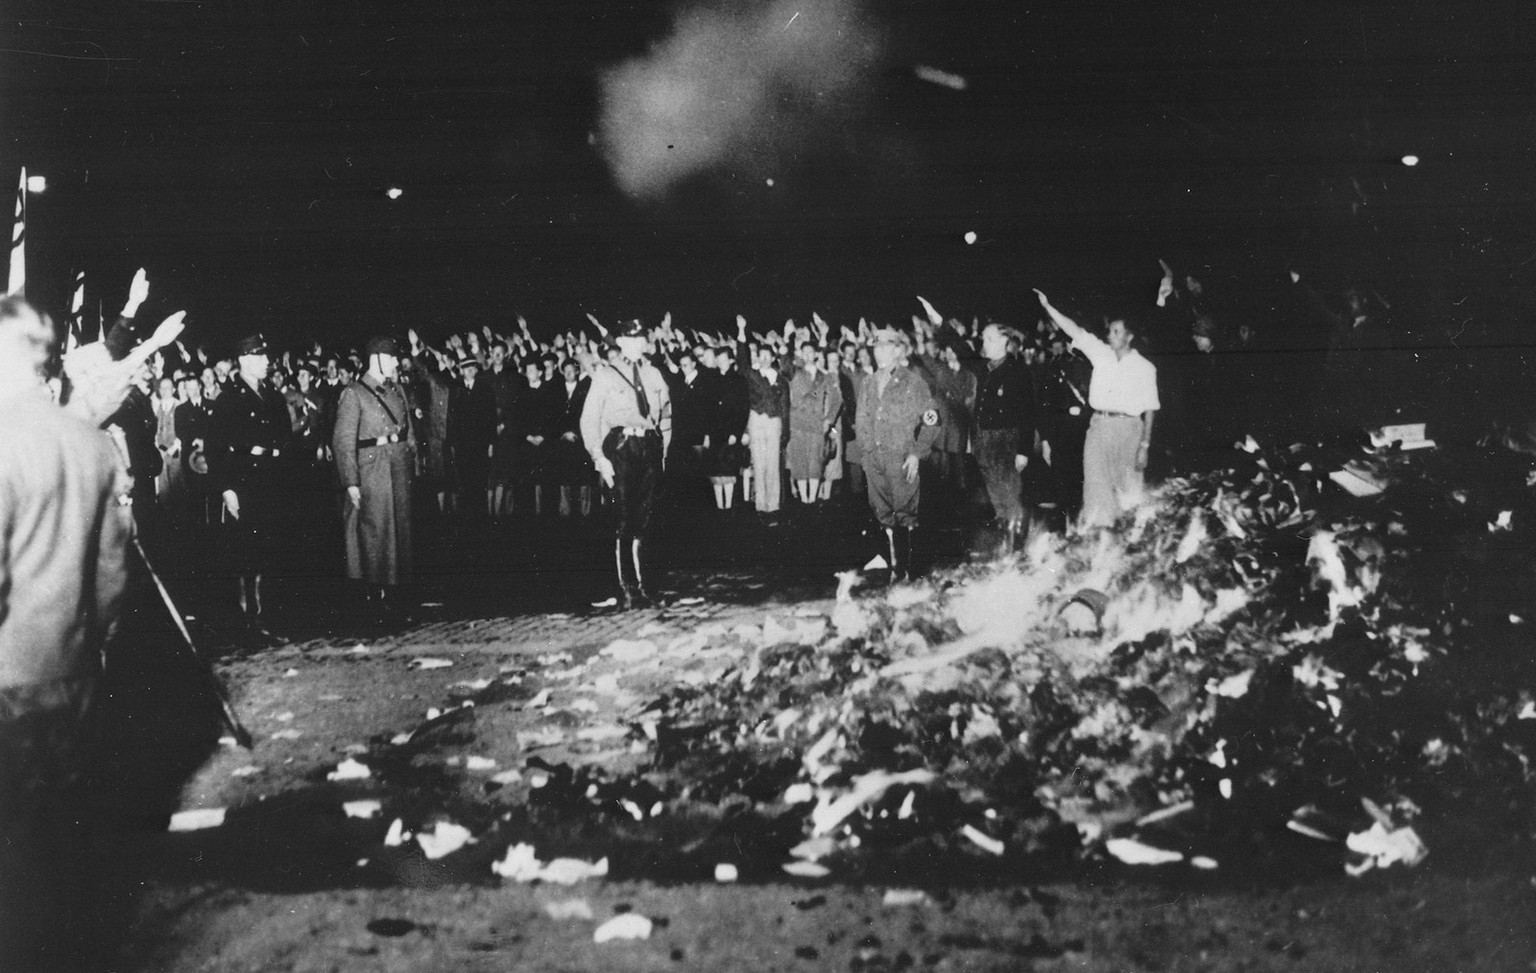 La mise au bûcher d’une certaine littérature a convoqué le désagréable souvenir des autodafés pratiqués sous l’ère nazie. Autodafé sur l’Opernplatz de Berlin le 10 mai 1933.